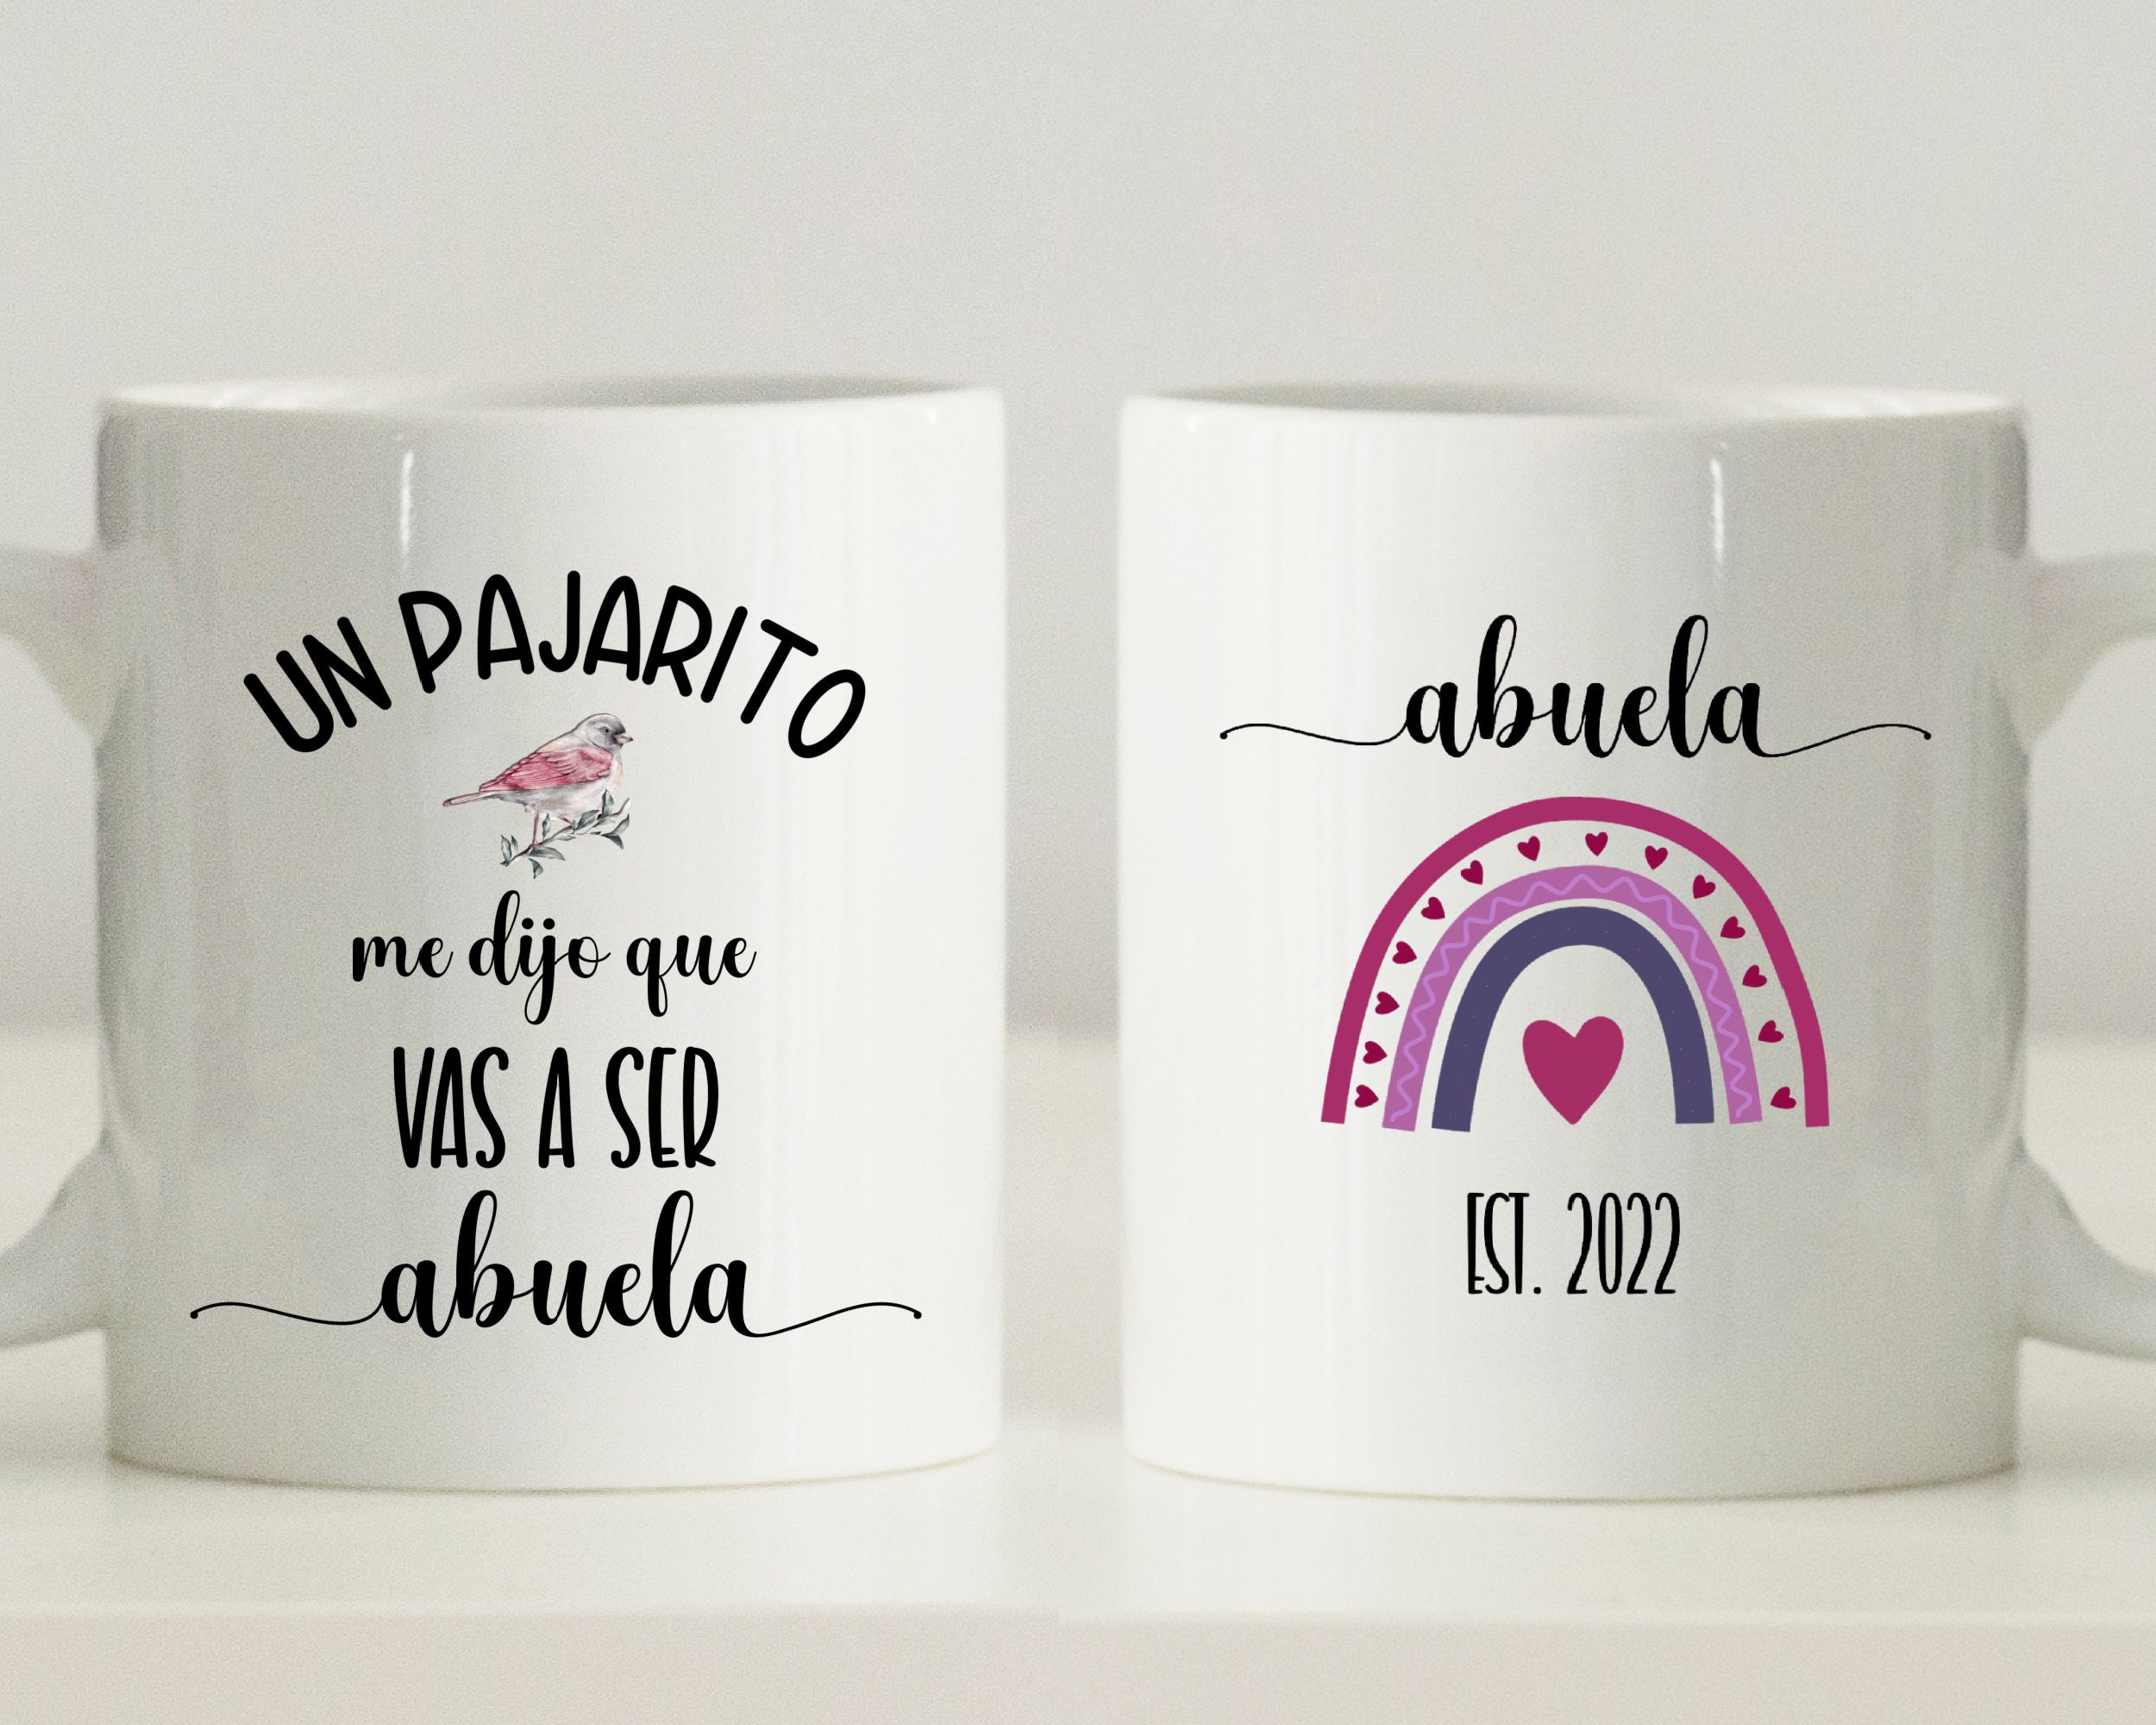 Taza Abuela, Regalo personalizado de anuncio de embarazo en español,  Anuncio De Embarazo, Un Pajarito Me Dijo, Abuela Est 2024, Taza Para Abuela  -  México